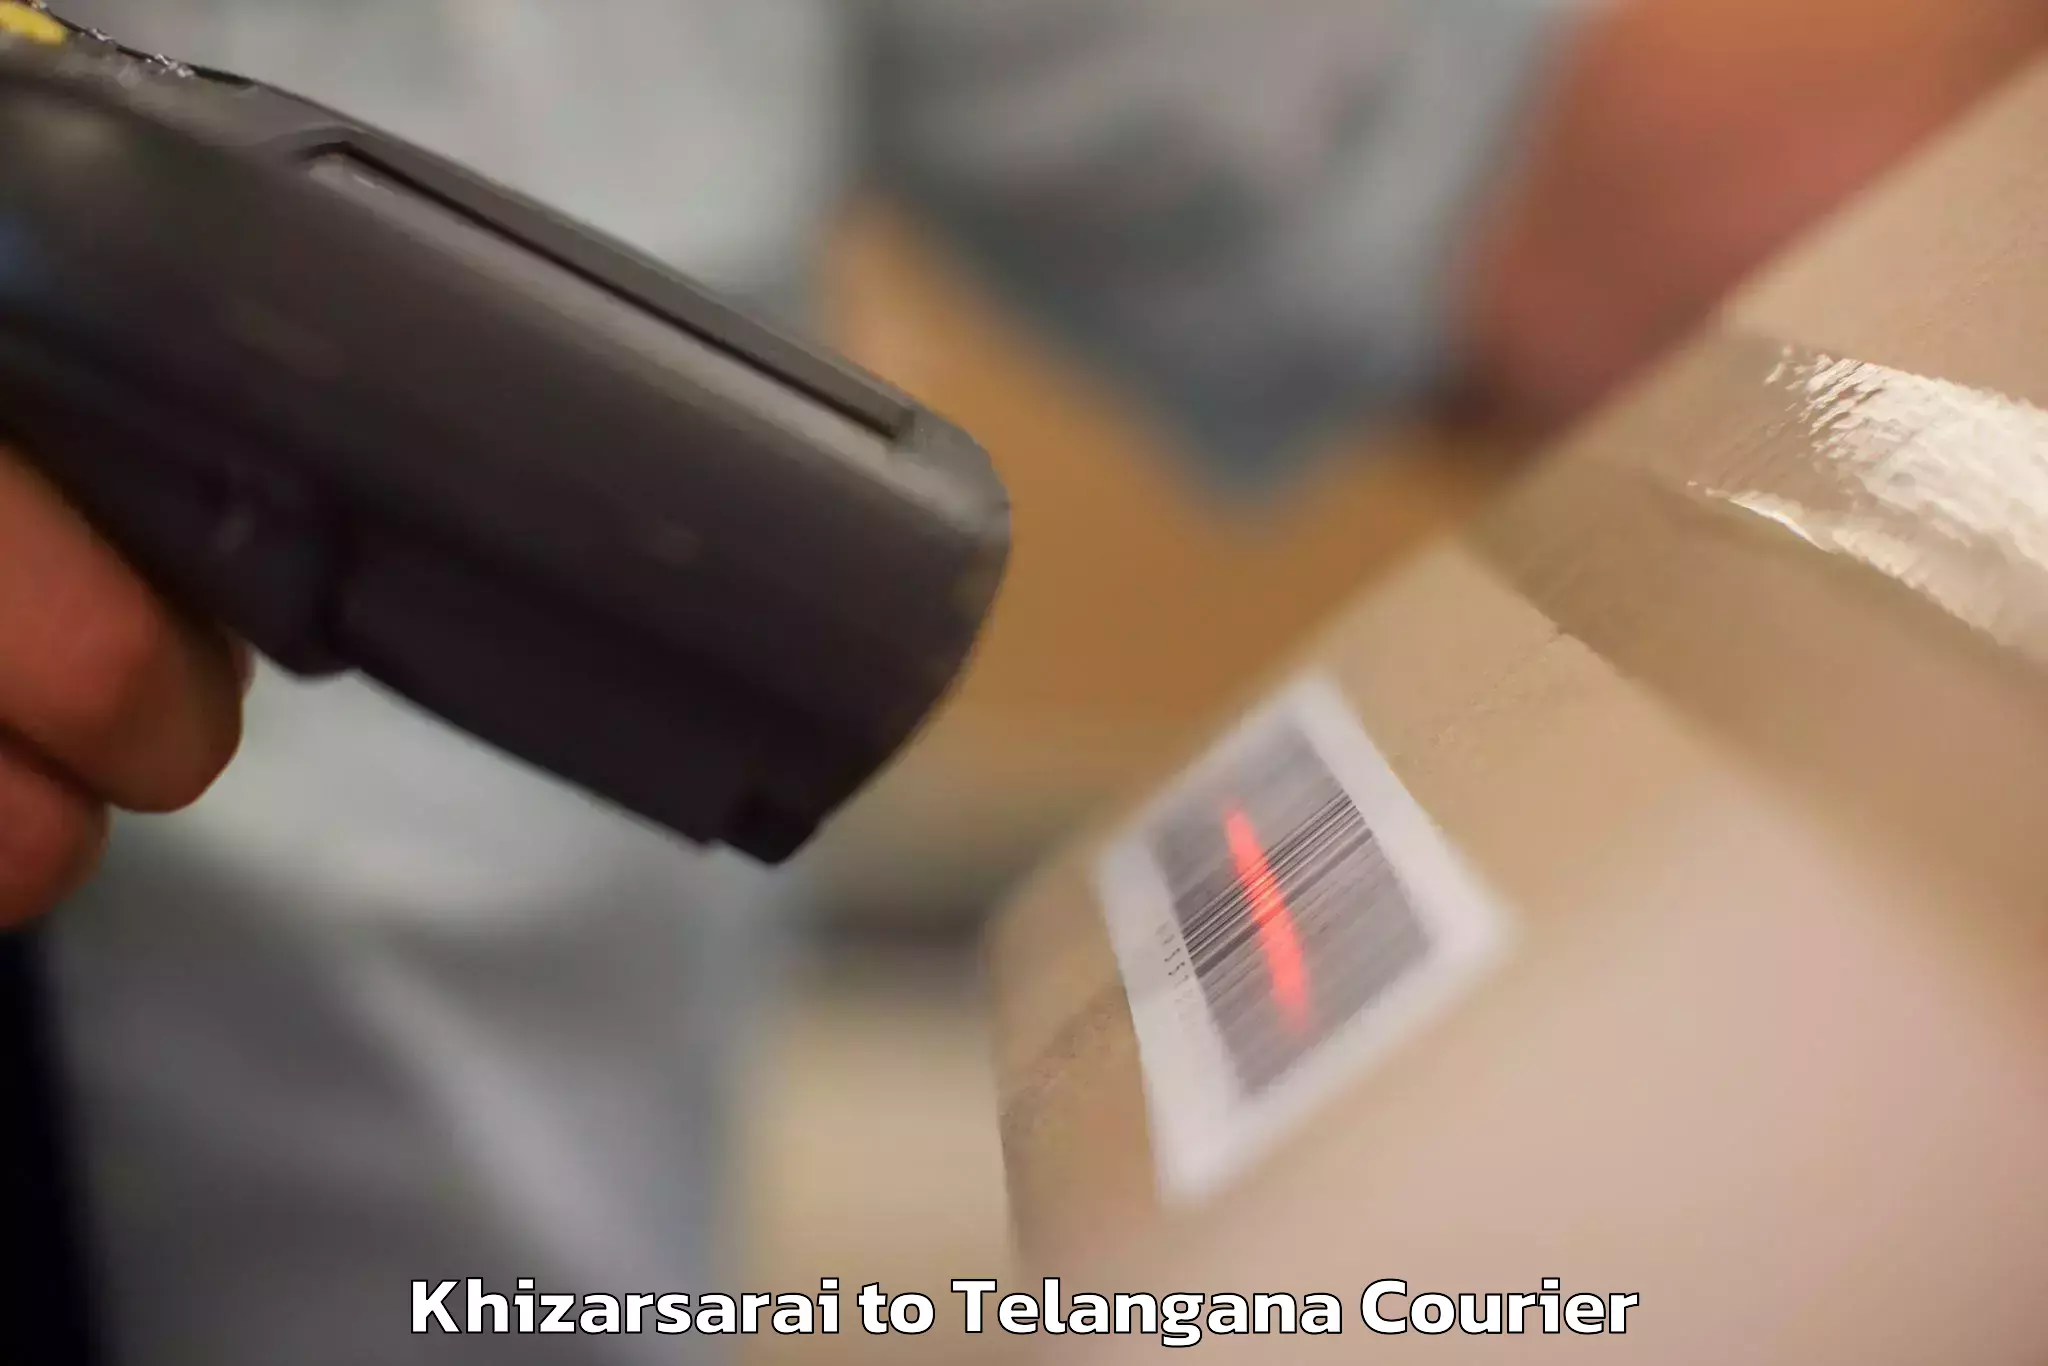 Personal effects shipping in Khizarsarai to Jainoor